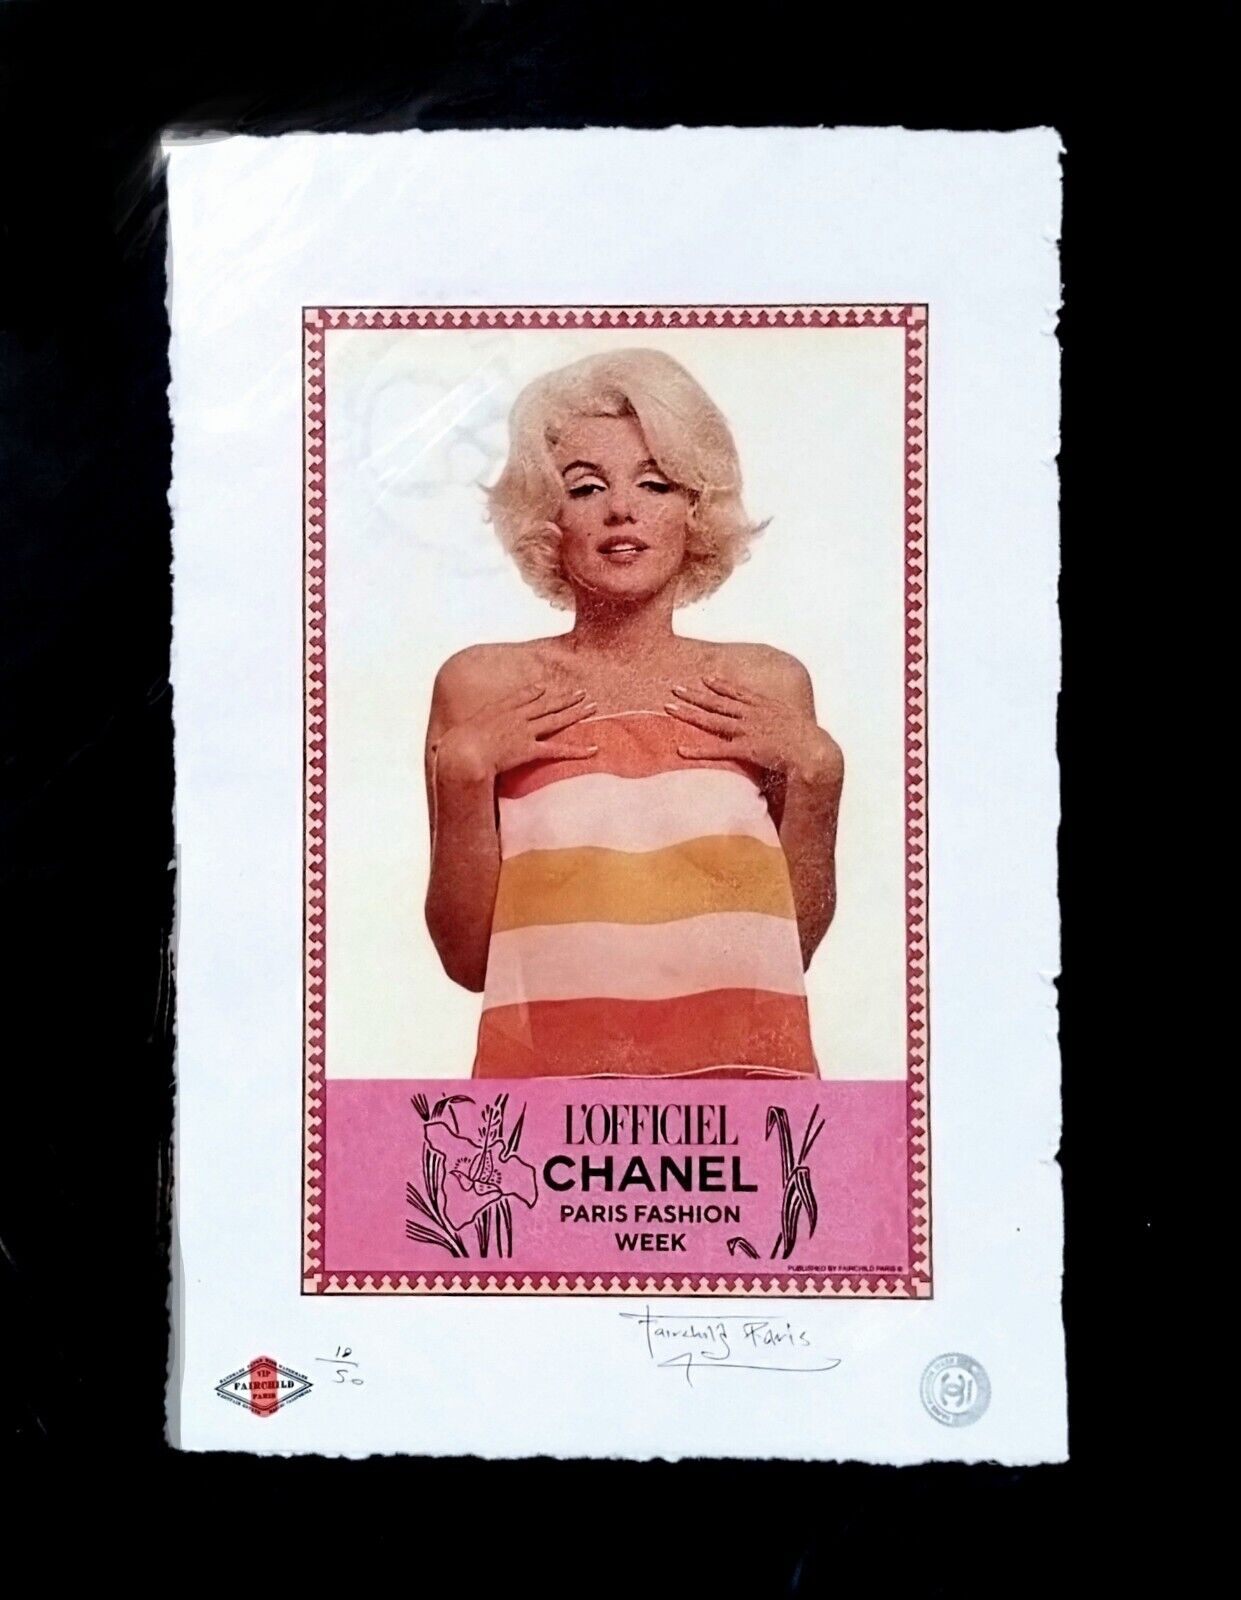 Marilyn Monroe, CHANEL, L'OFFICIEL, Ltd. Edition 22x15x Signed Fairchild  Paris